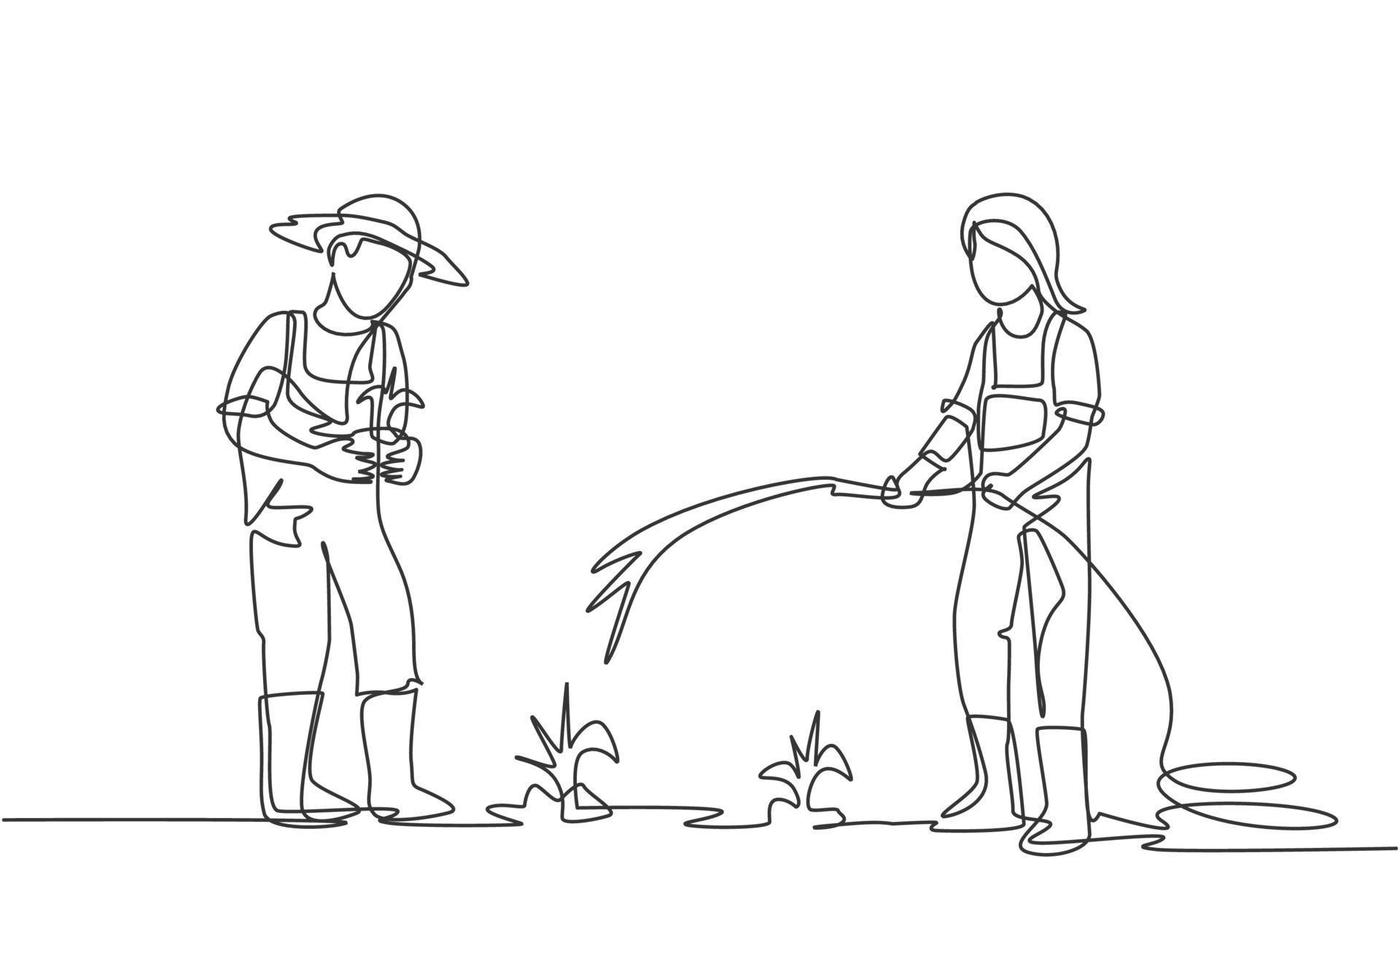 dibujo de línea continua única par agricultor regando las plantas con una manguera y plantando nuevas plantas. concepto de actividades de siembra de agricultores. Ilustración de vector de diseño gráfico de dibujo dinámico de una línea.